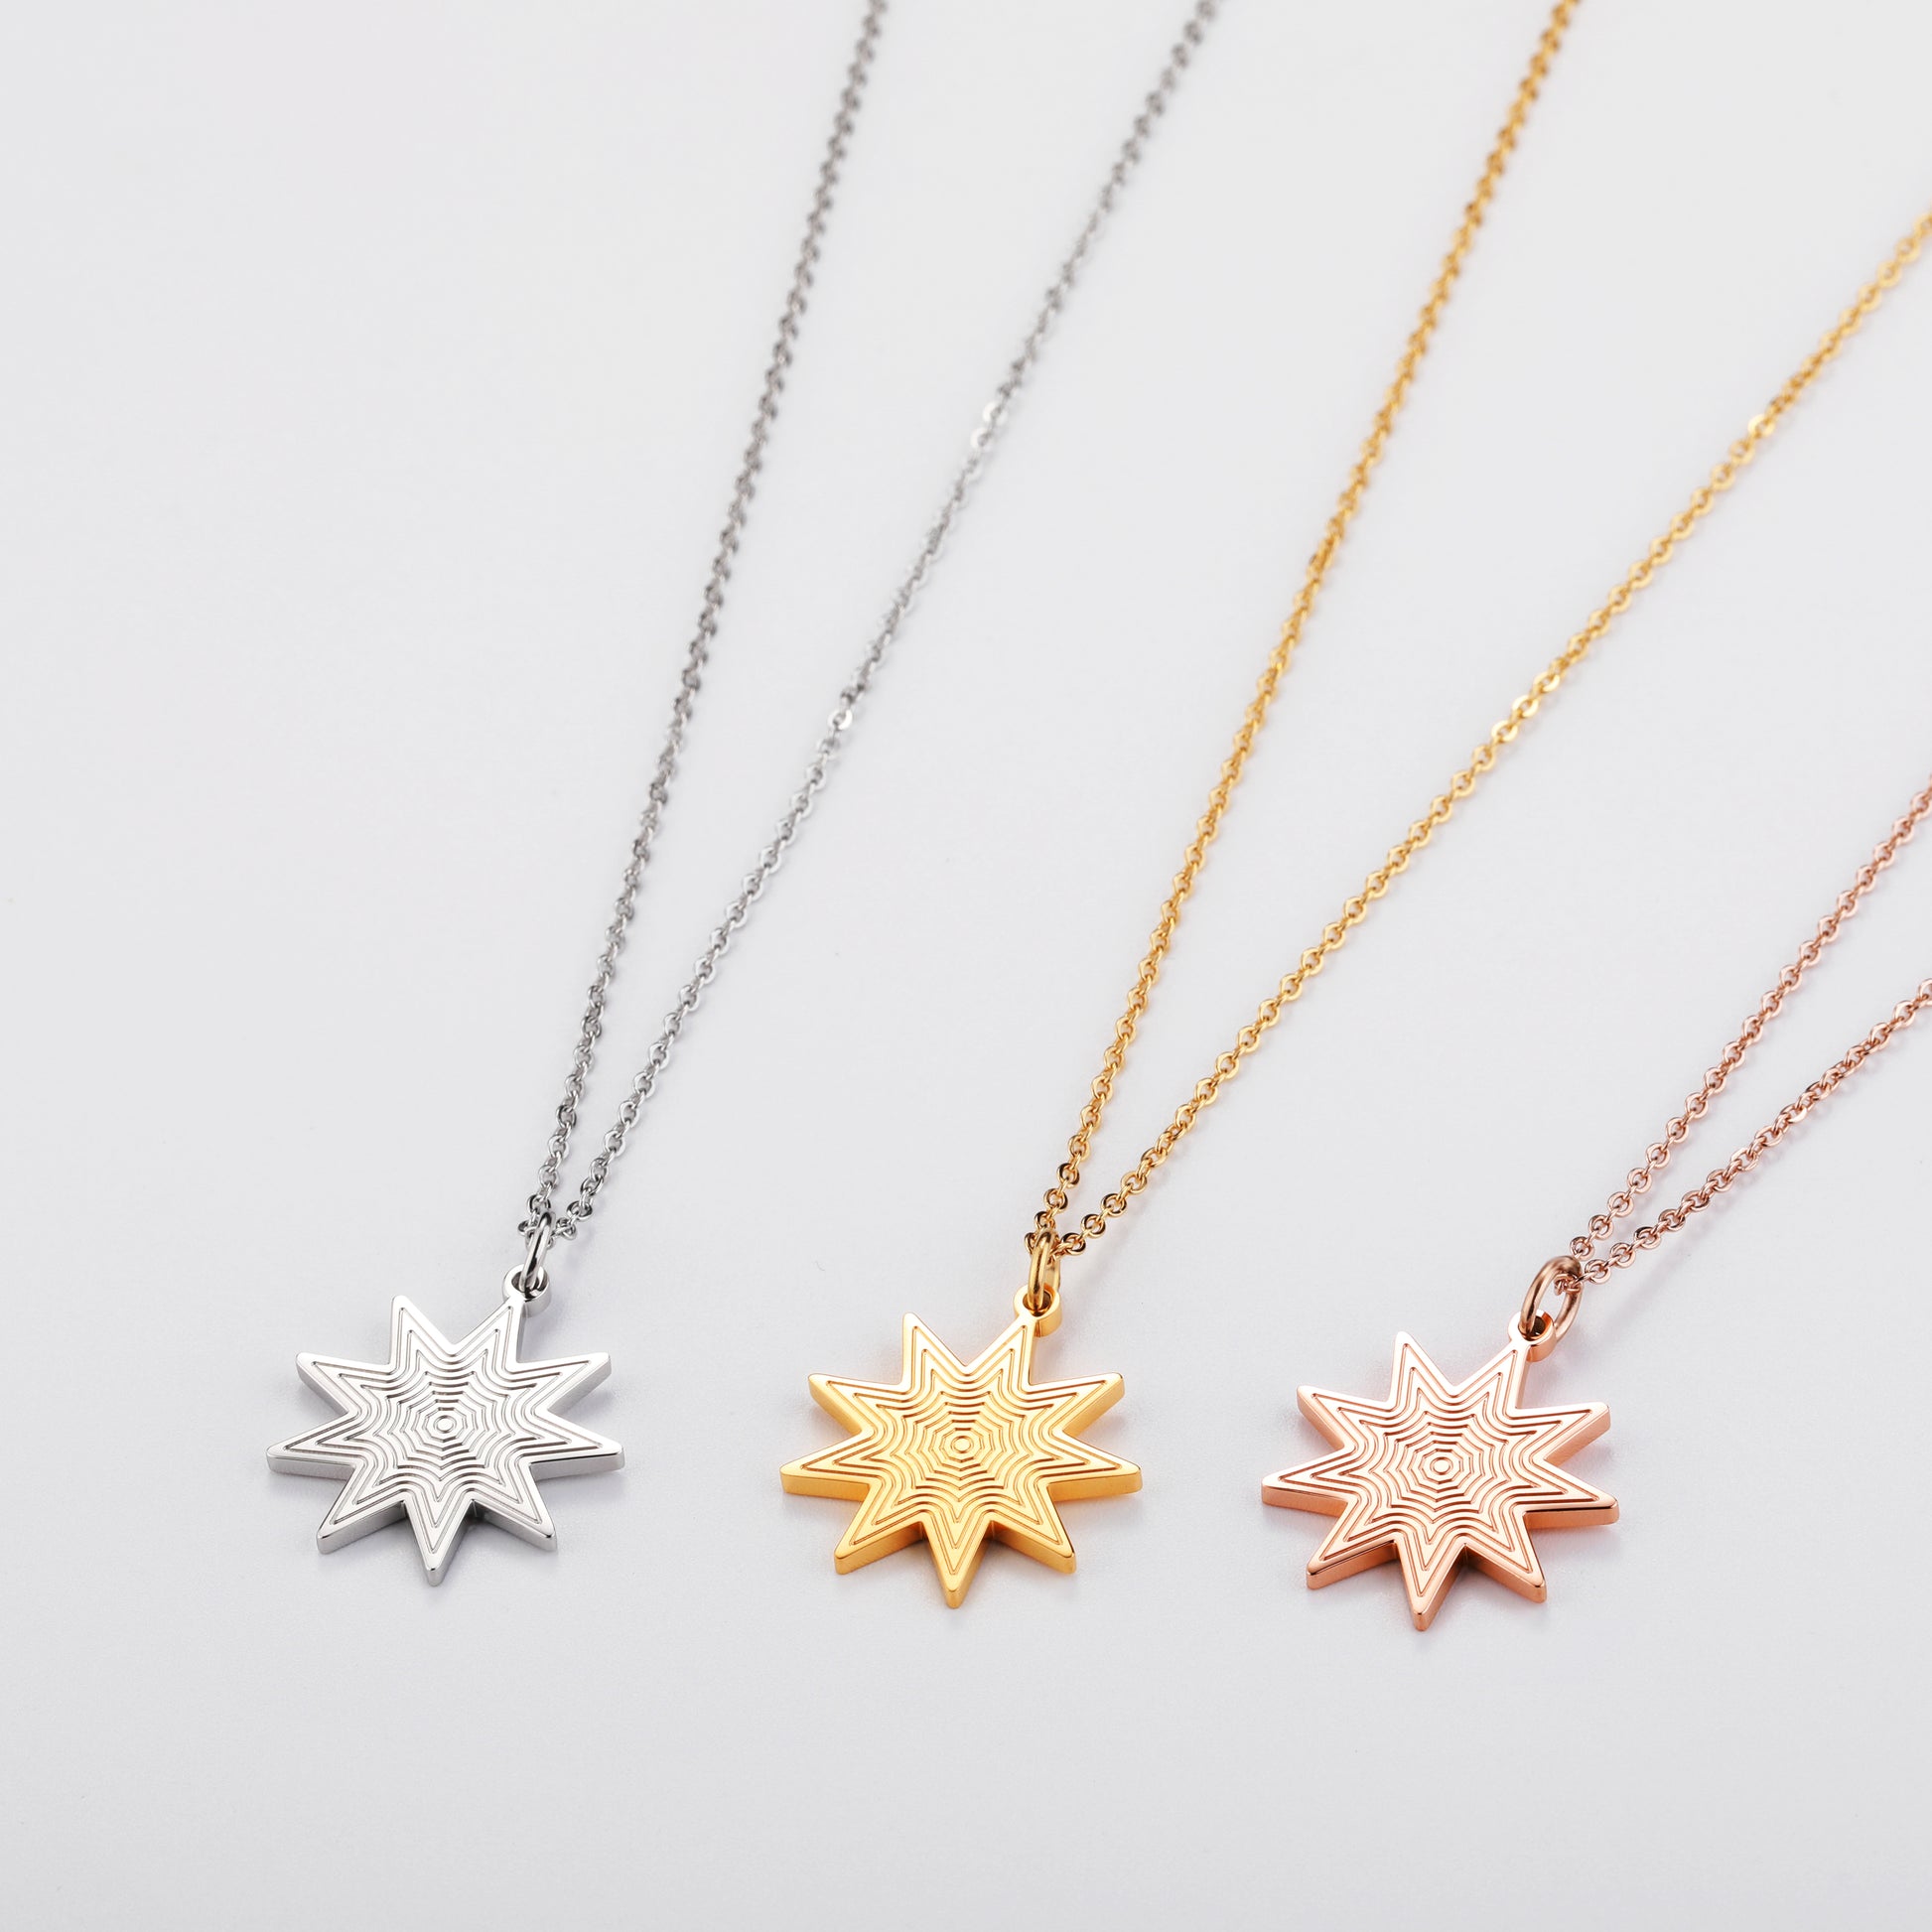 Darjali Jewelry Radiant Star Necklace Group